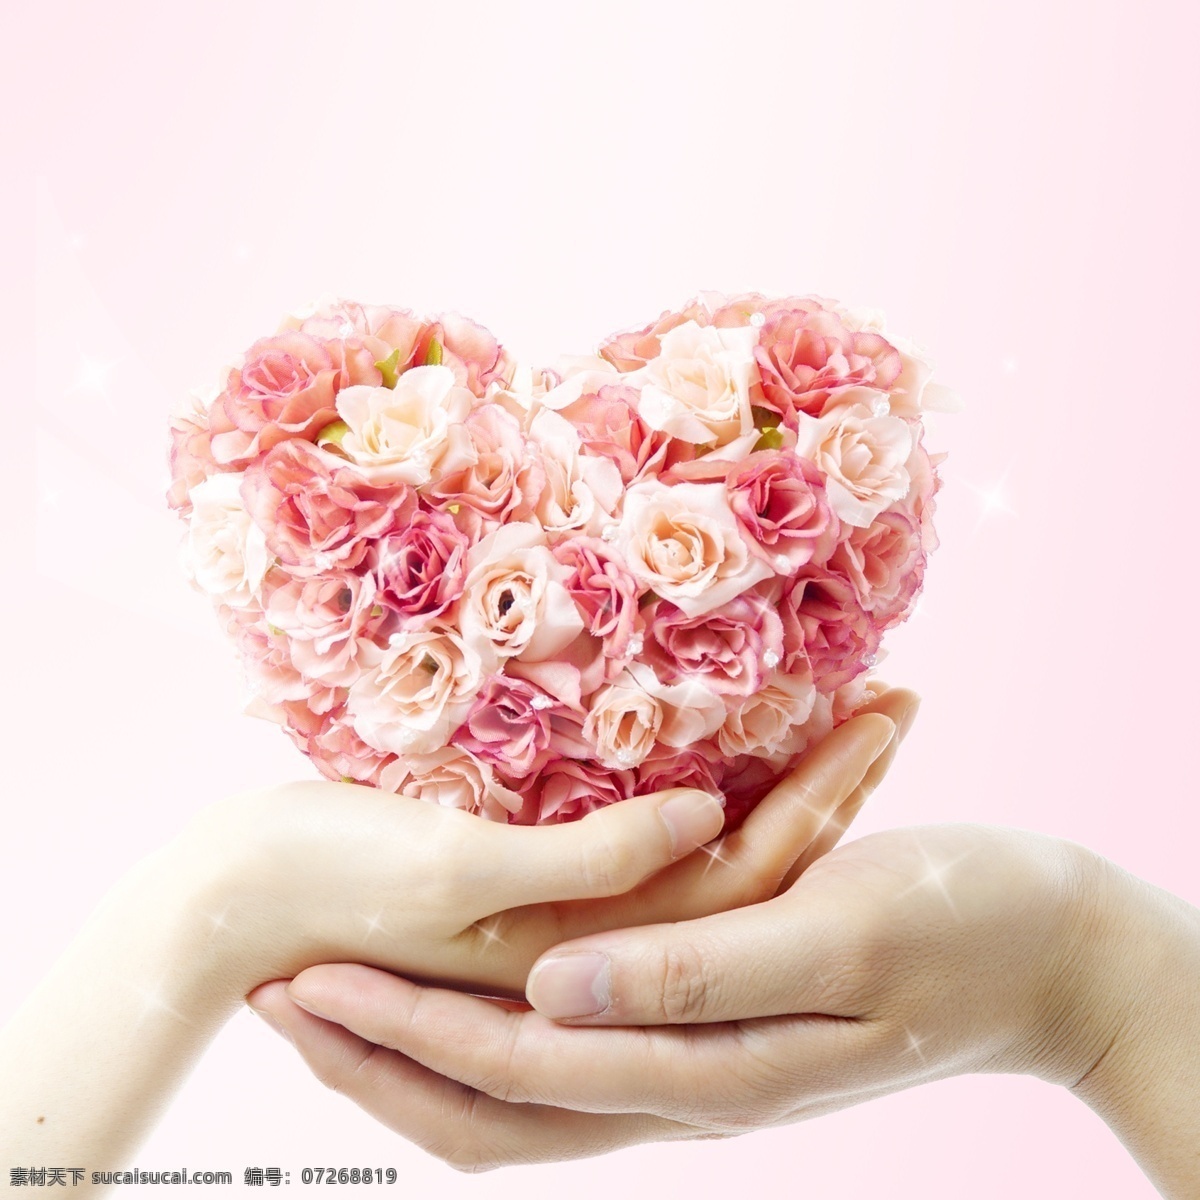 花朵 爱 心手 捧 花 高光 粉色 背景 红色玫瑰 爱心 手捧花 粉色背景素材 广告素材 广告元素